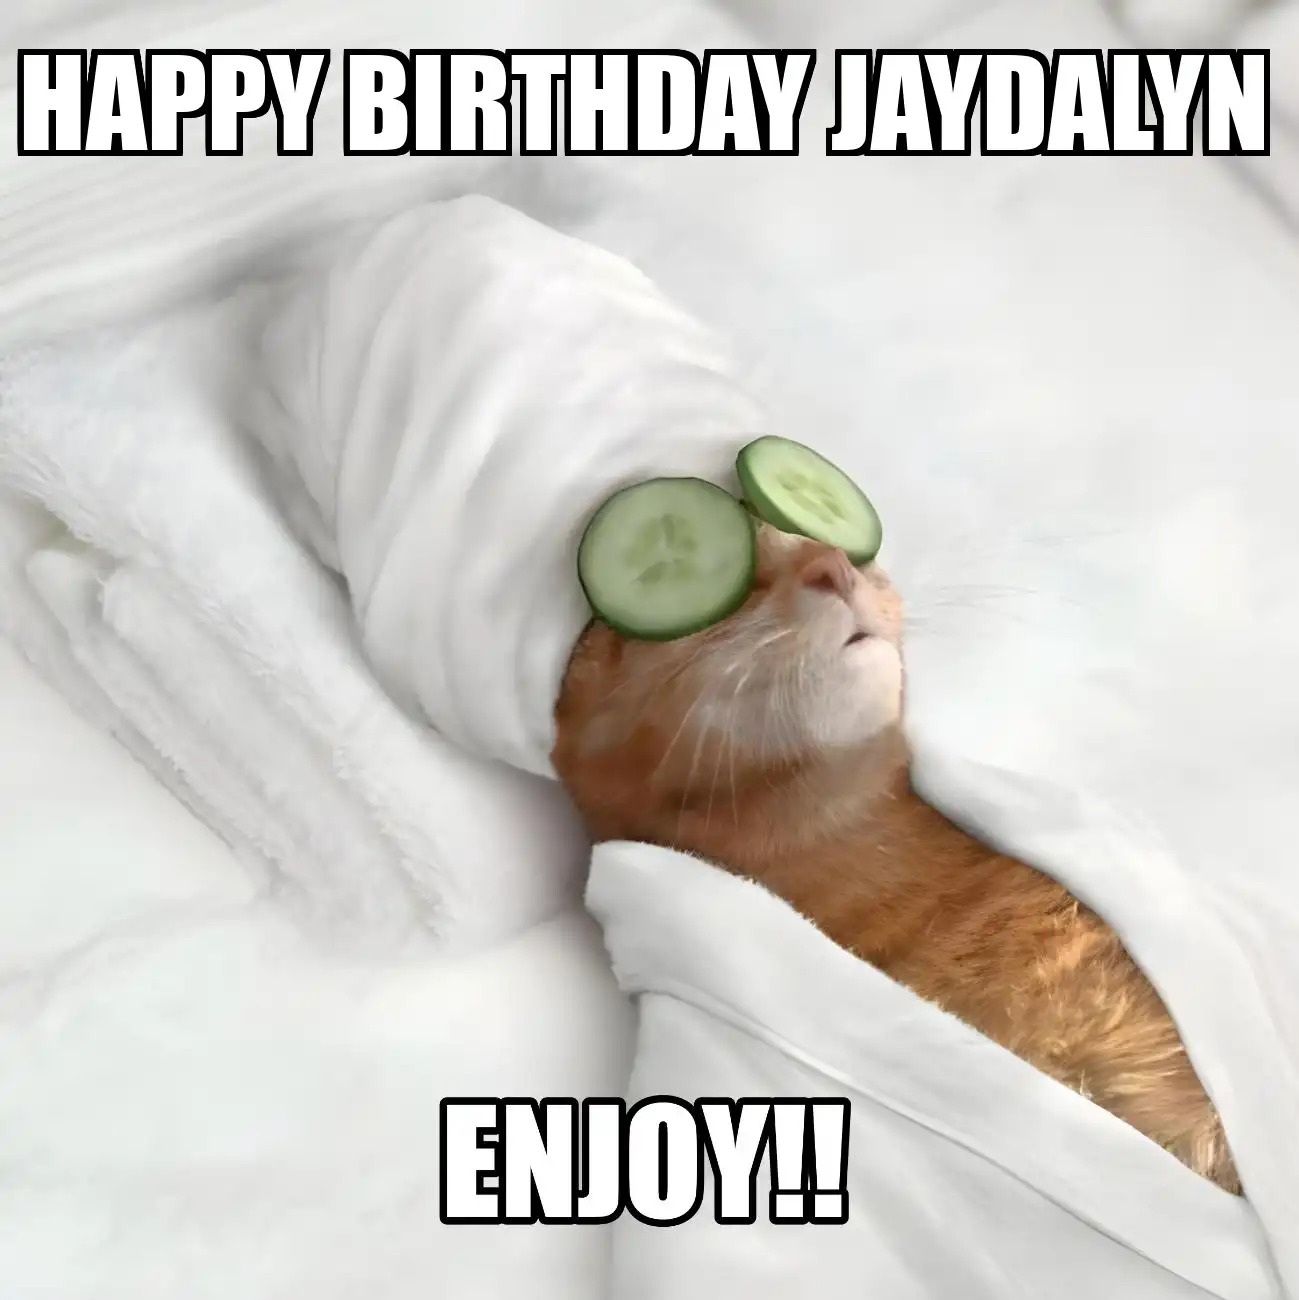 Happy Birthday Jaydalyn Enjoy Cat Meme